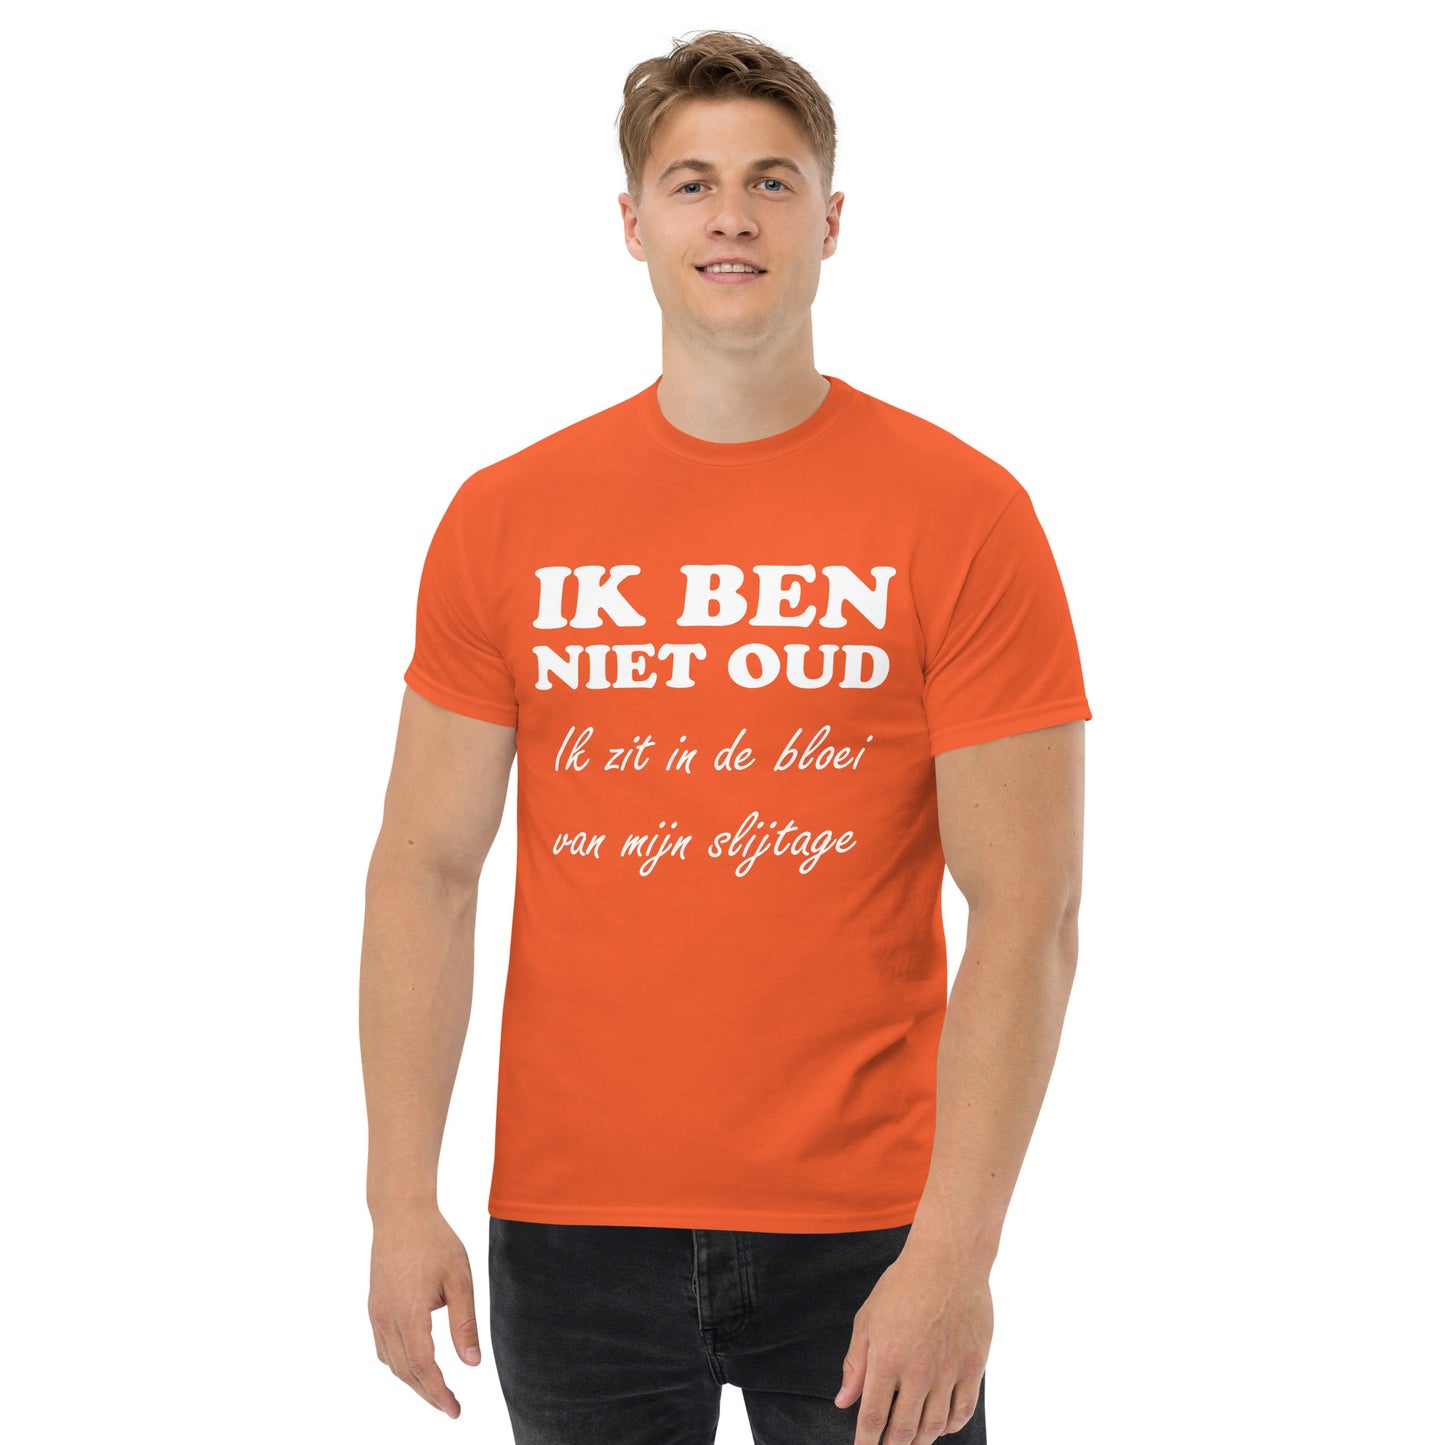 men with Orange T-shirt with the text in white "IK BEN NIET OUD ik zit in de bloei van mijn slijtage"